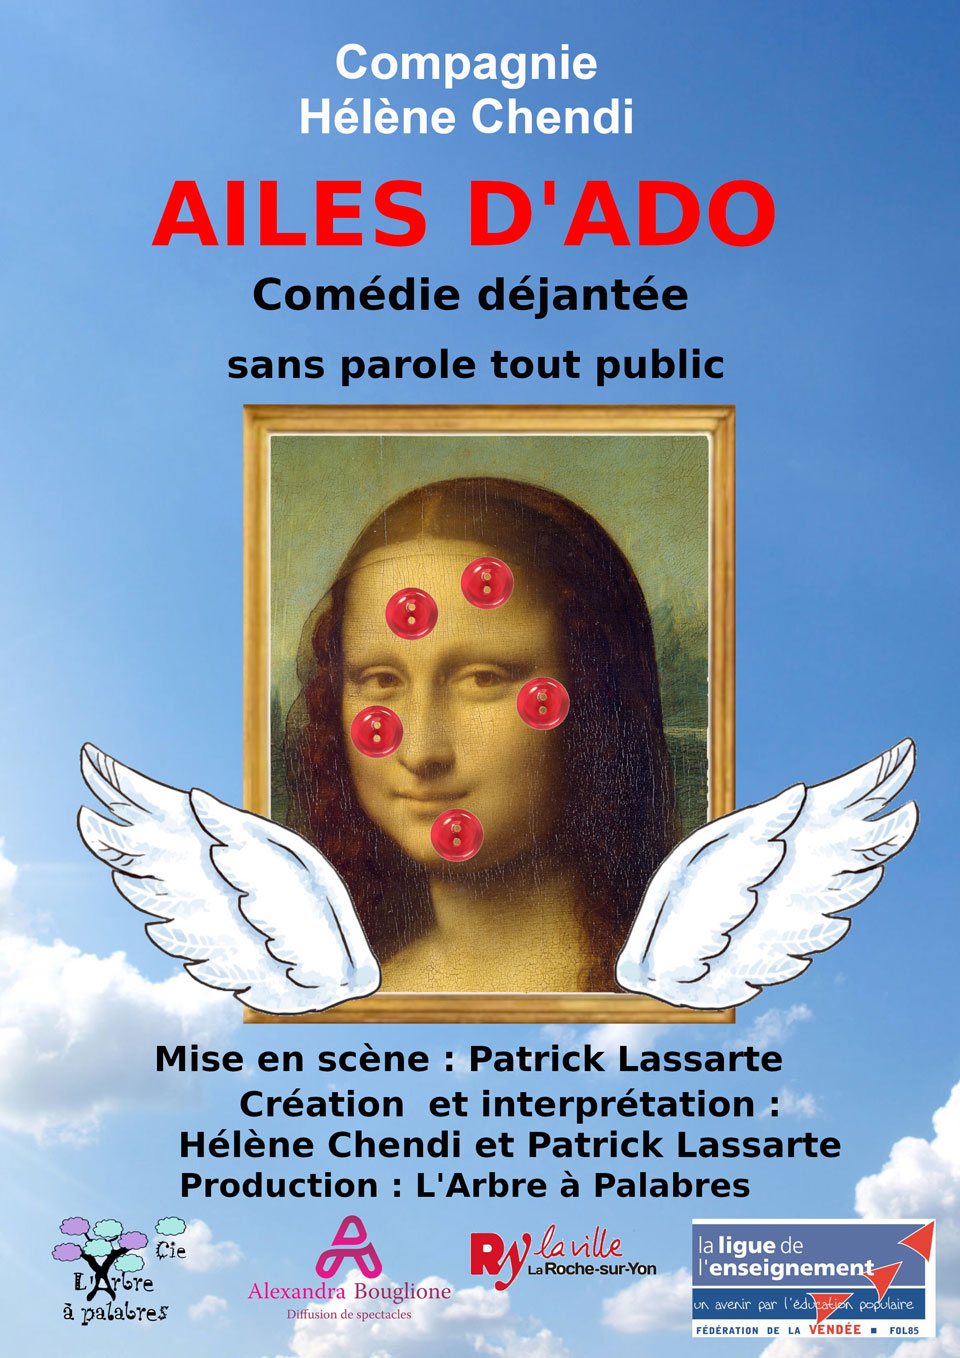 Affiche Ailes d'Ado - Hélène Chendi